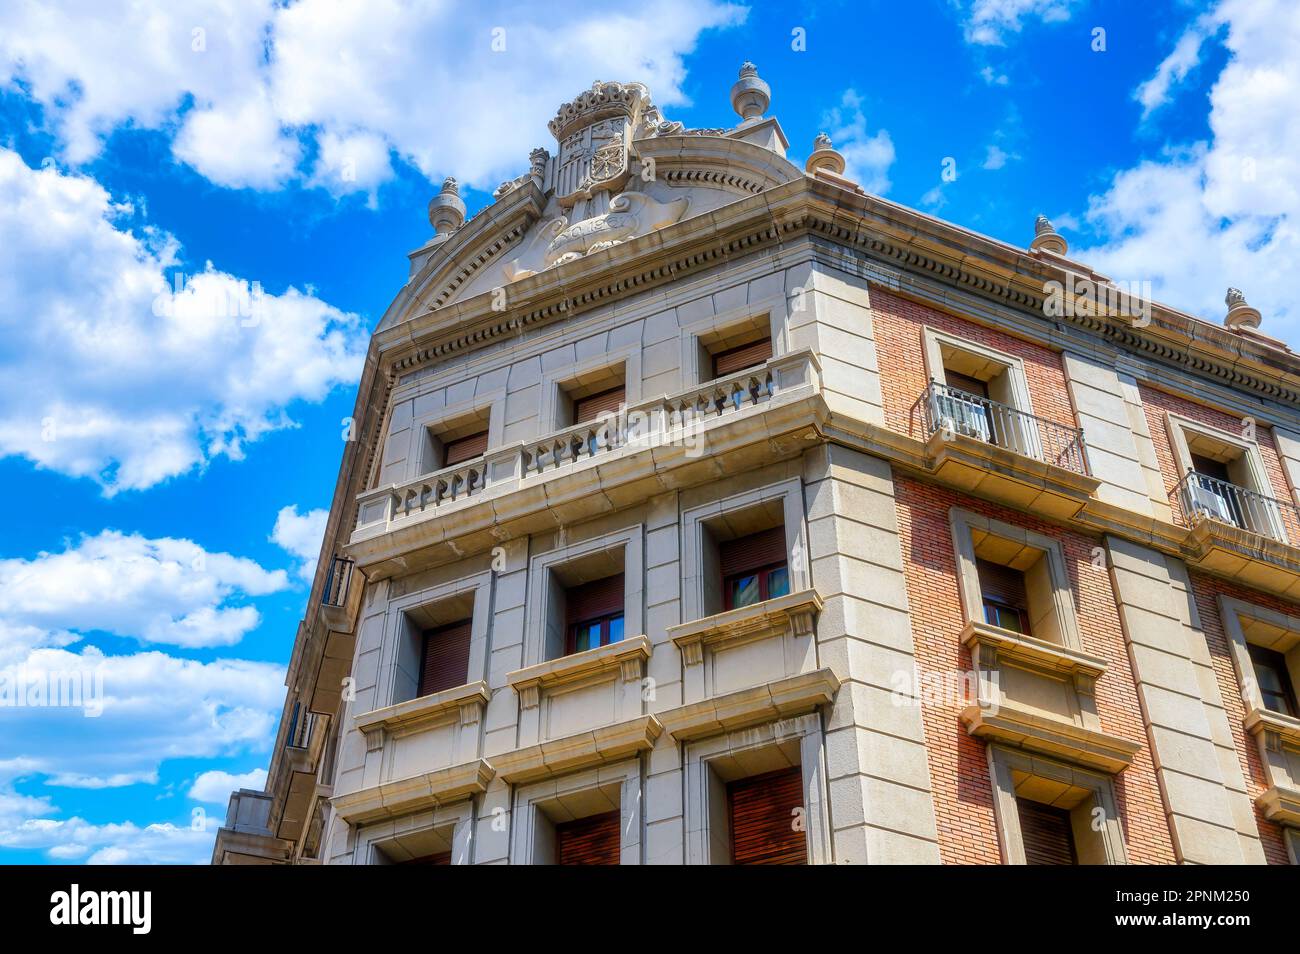 Centro Cultural de los Ejercitos, building exterior, Valencia, Spain Stock Photo